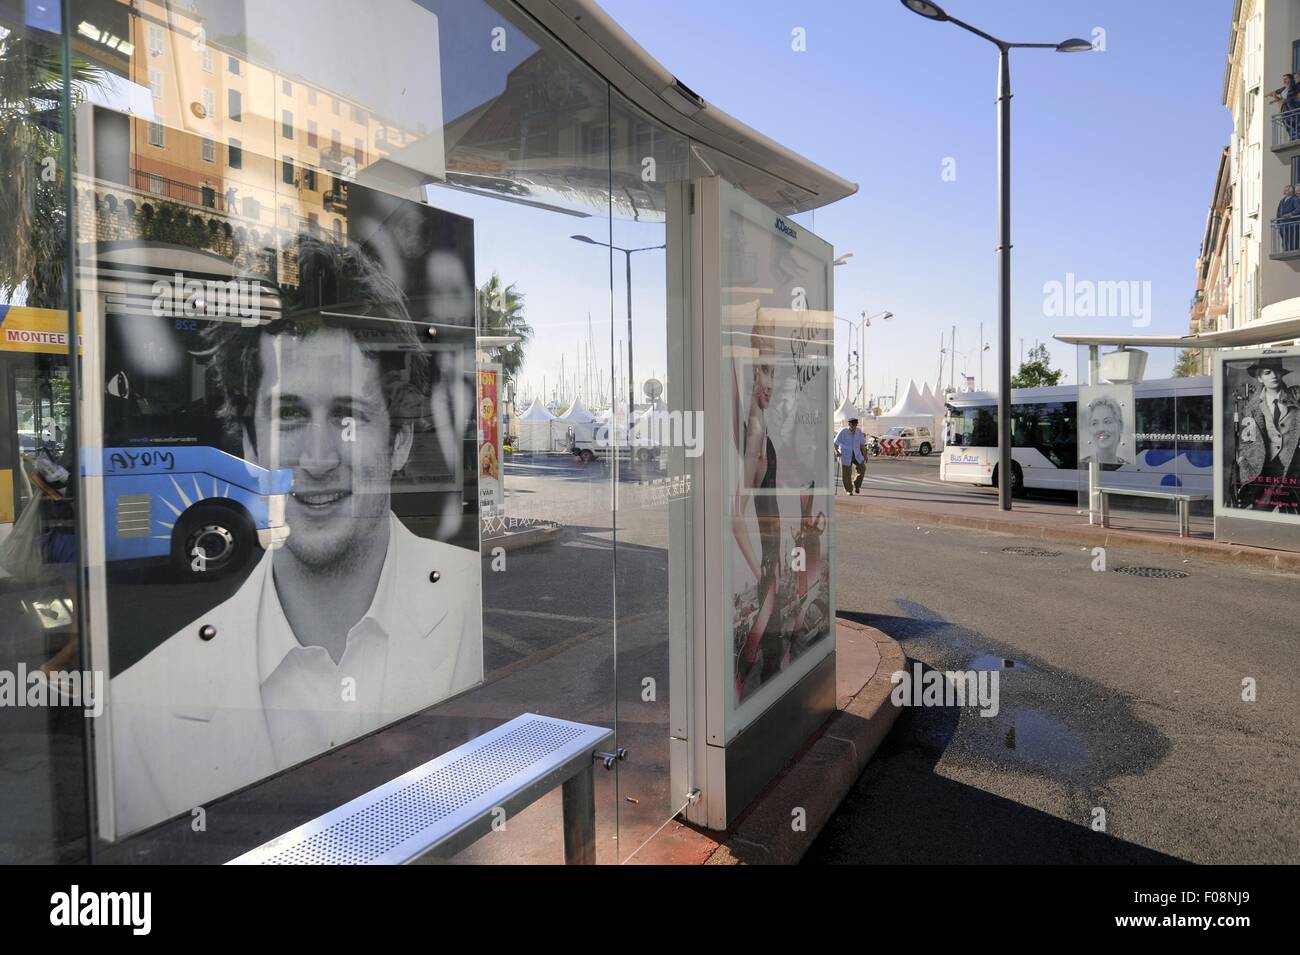 La France, d'Azur, Cannes : arrêt de bus avec des portraits d'acteurs célèbres Banque D'Images